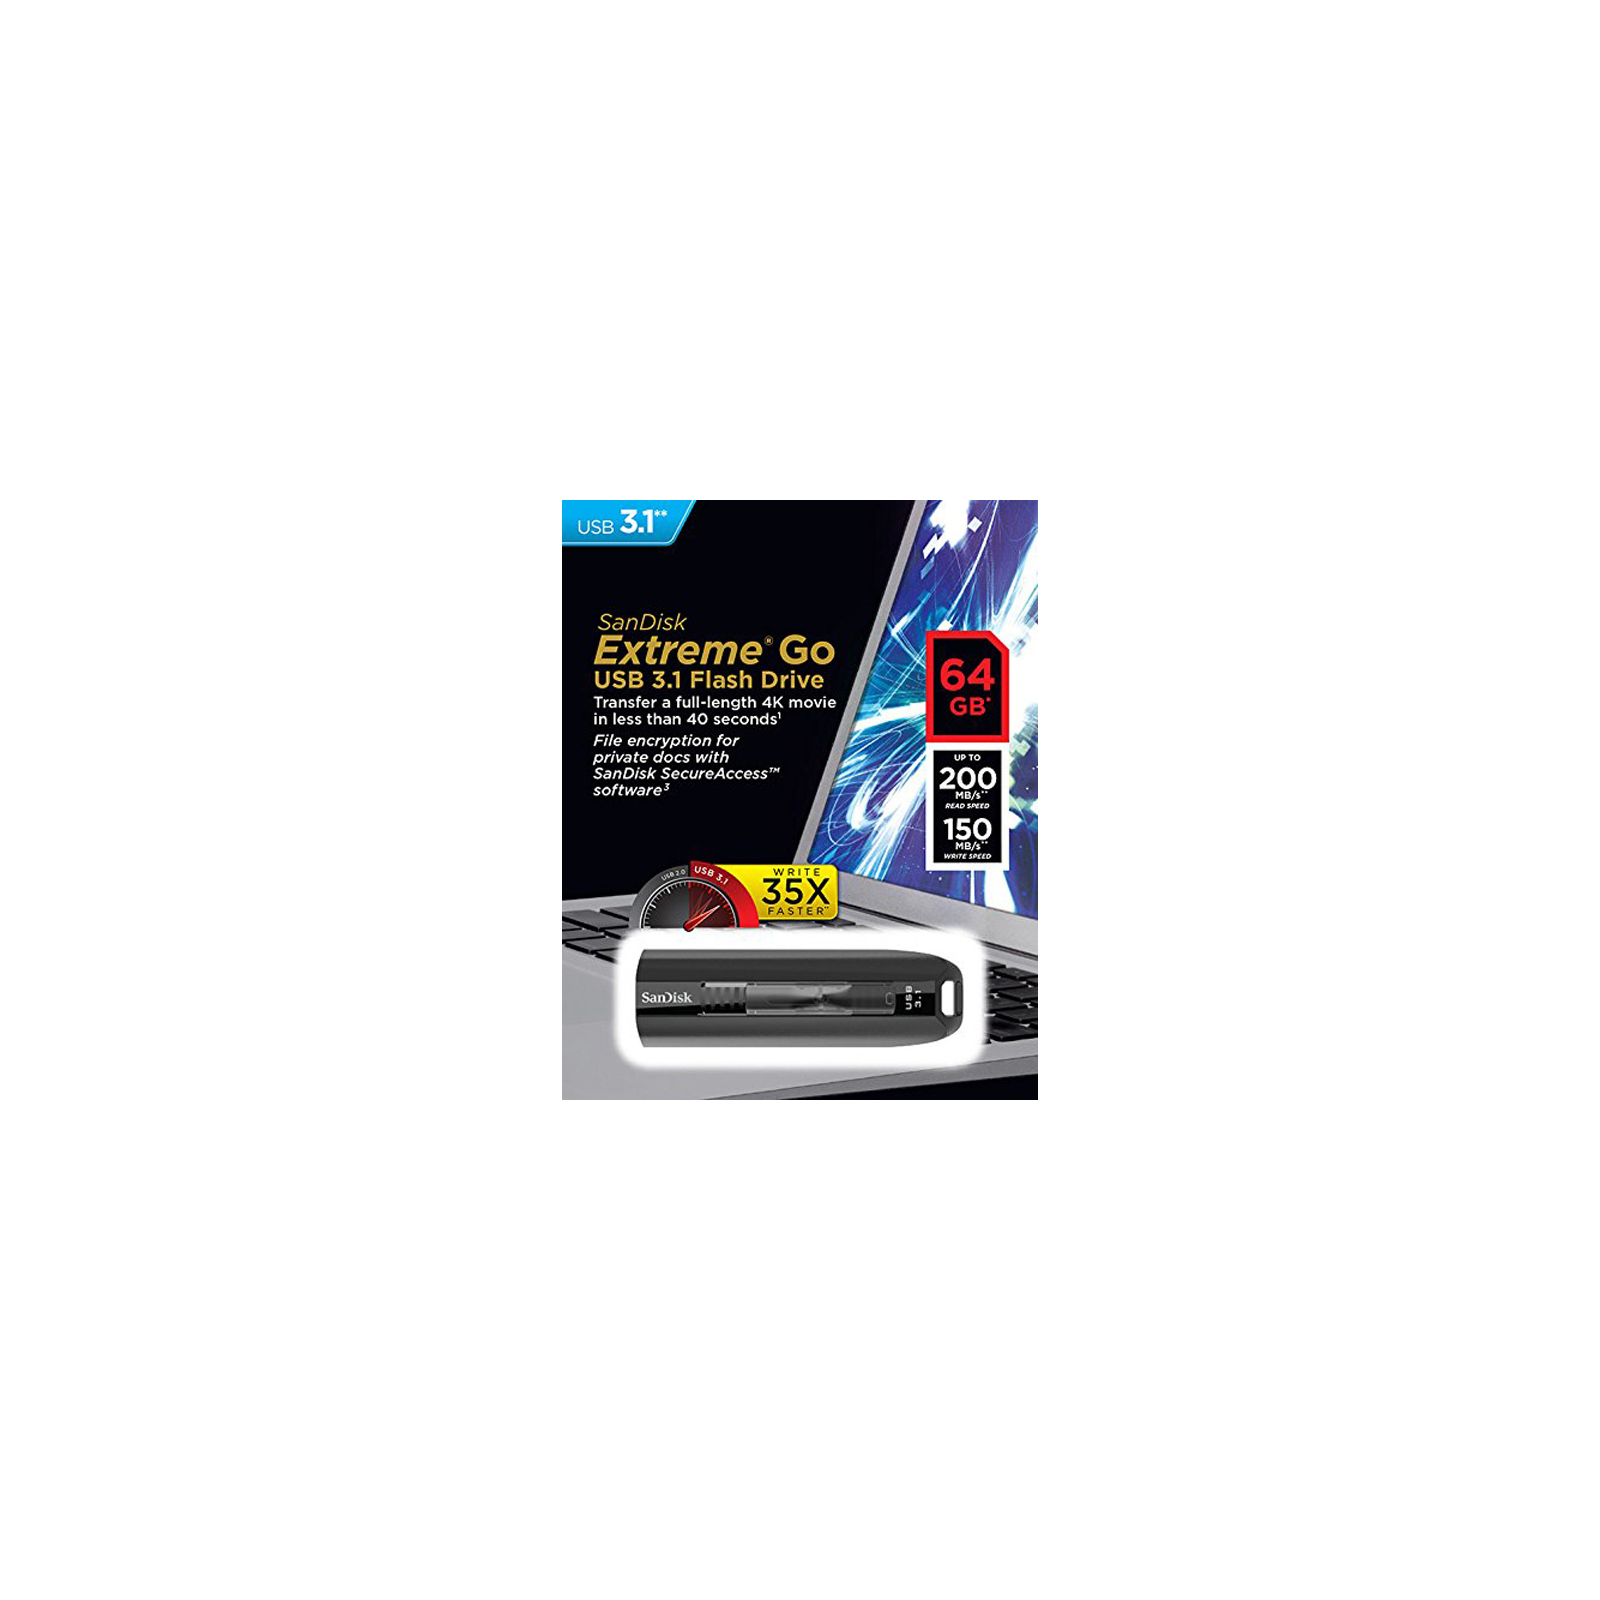 USB флеш накопичувач SanDisk 64GB Extreme Go USB 3.1 (SDCZ800-064G-G46) зображення 5